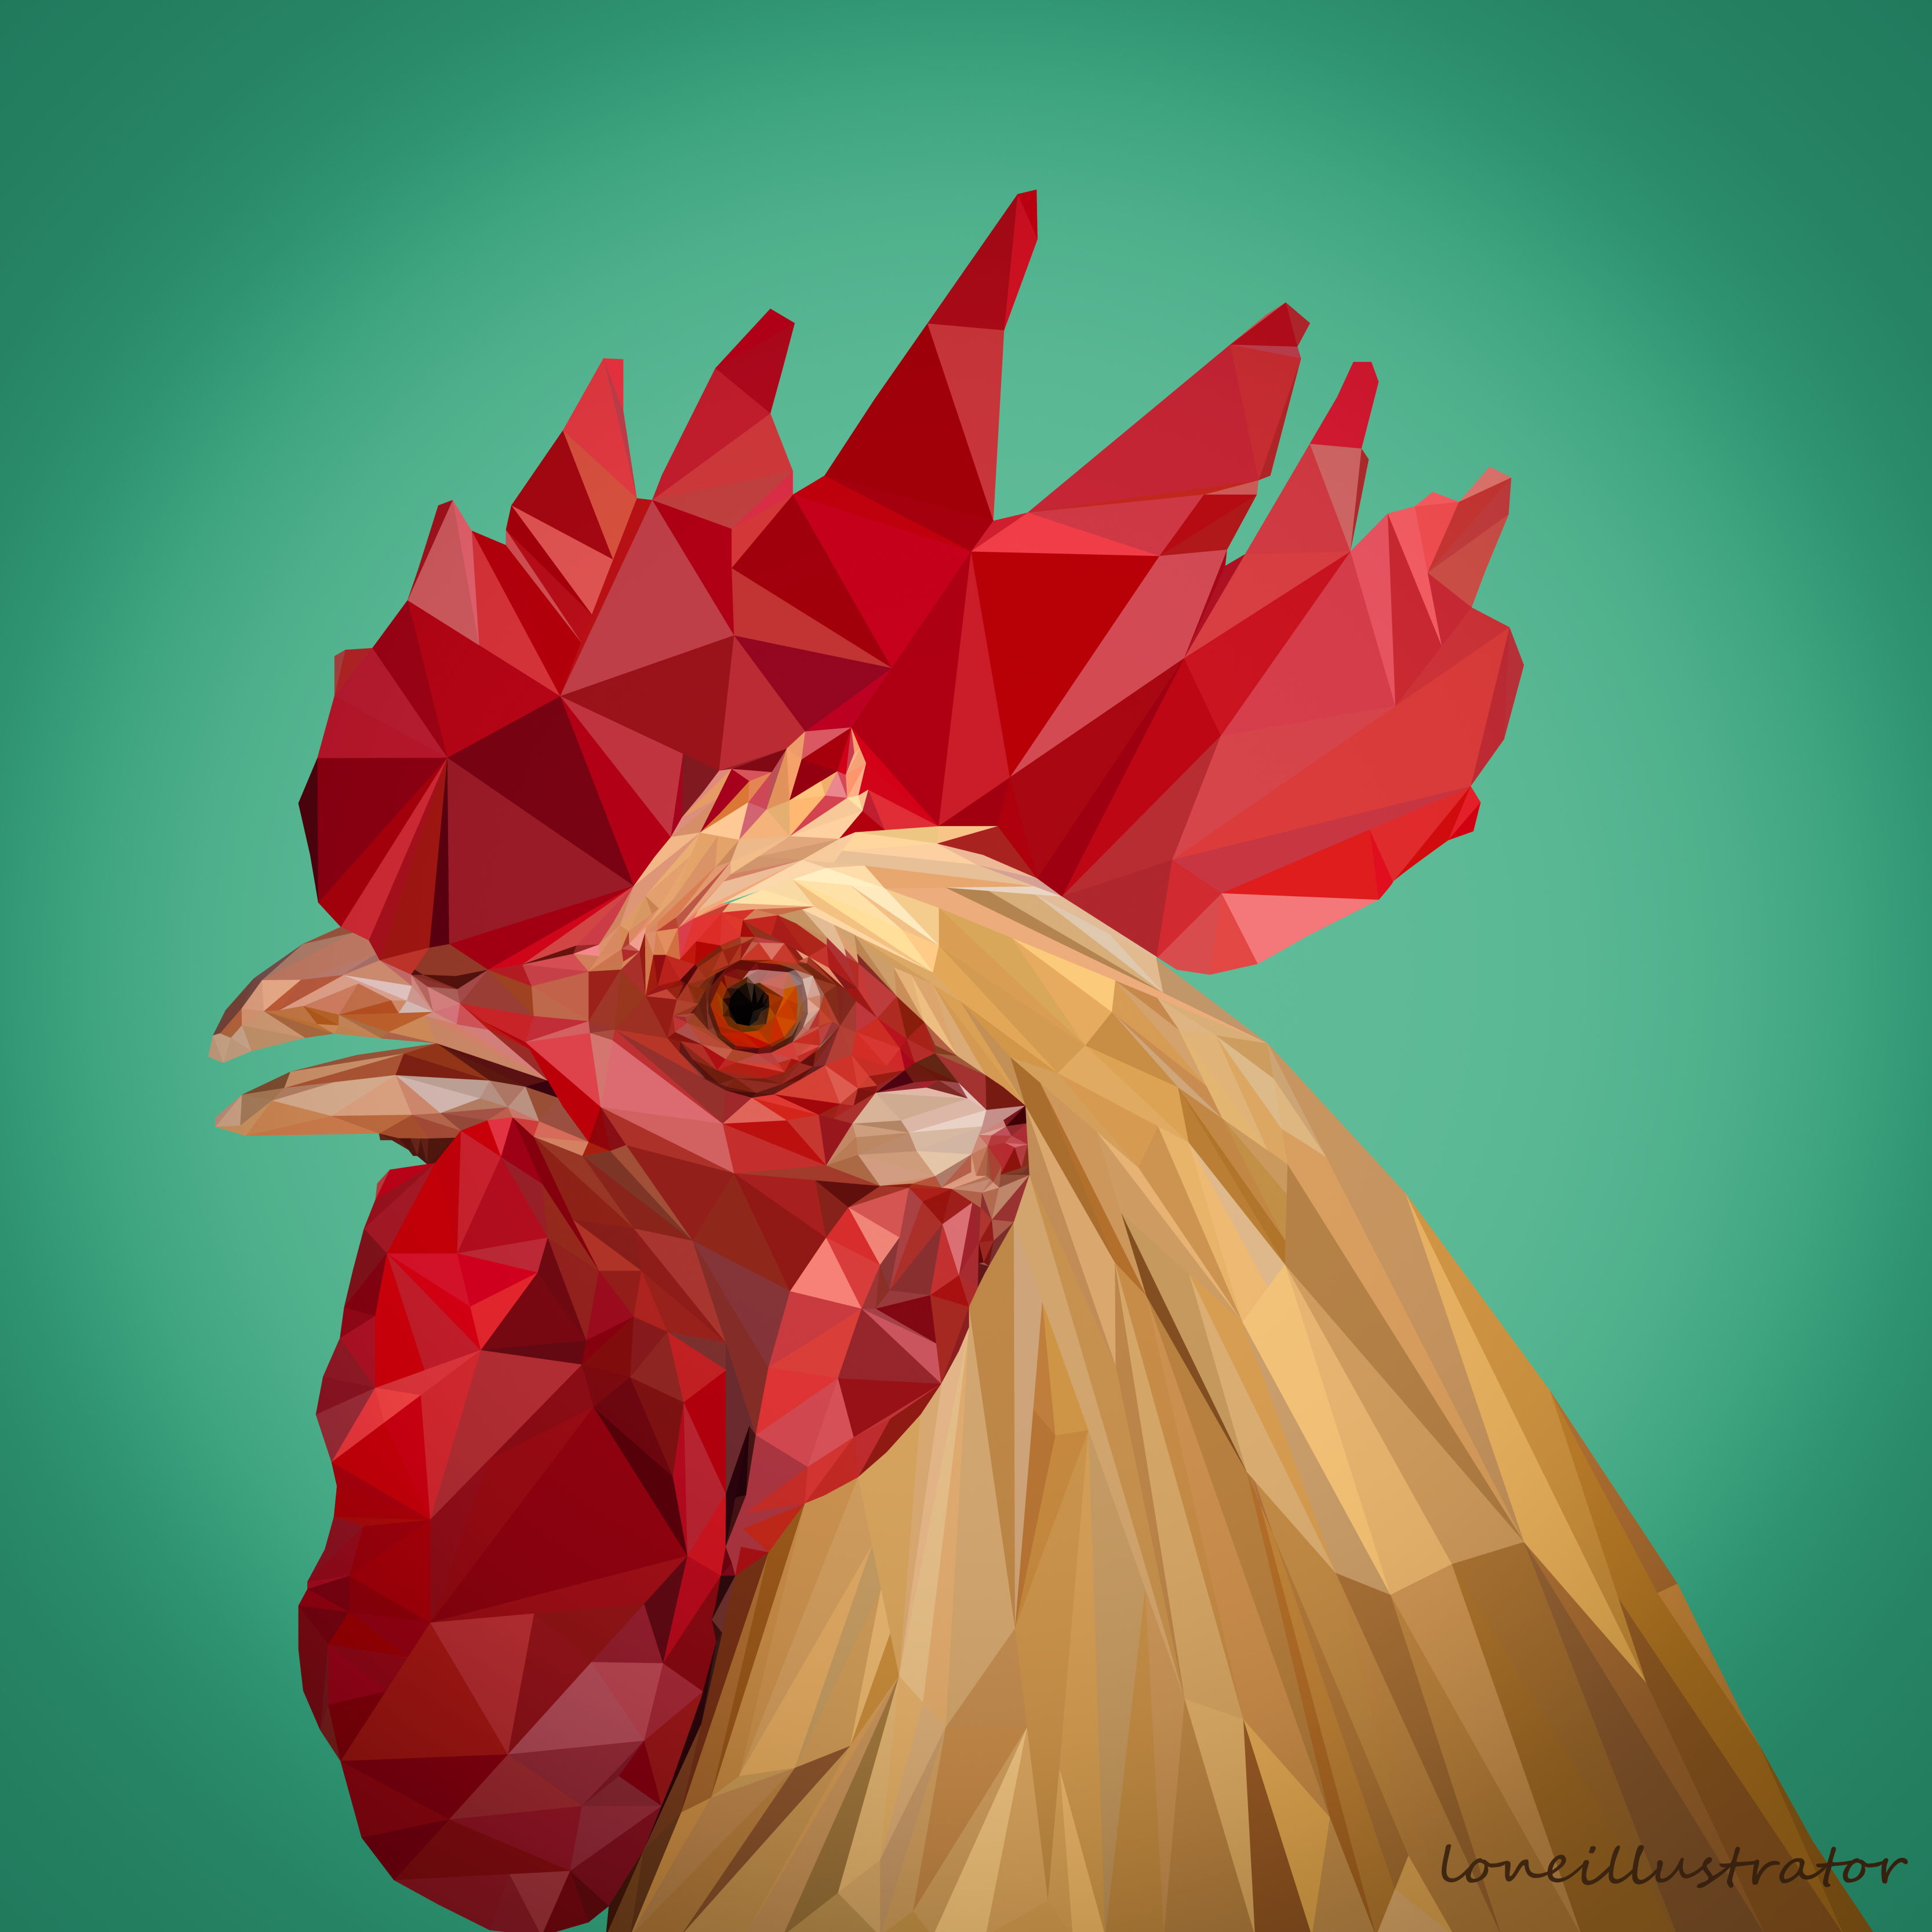 rooster1-01.jpg